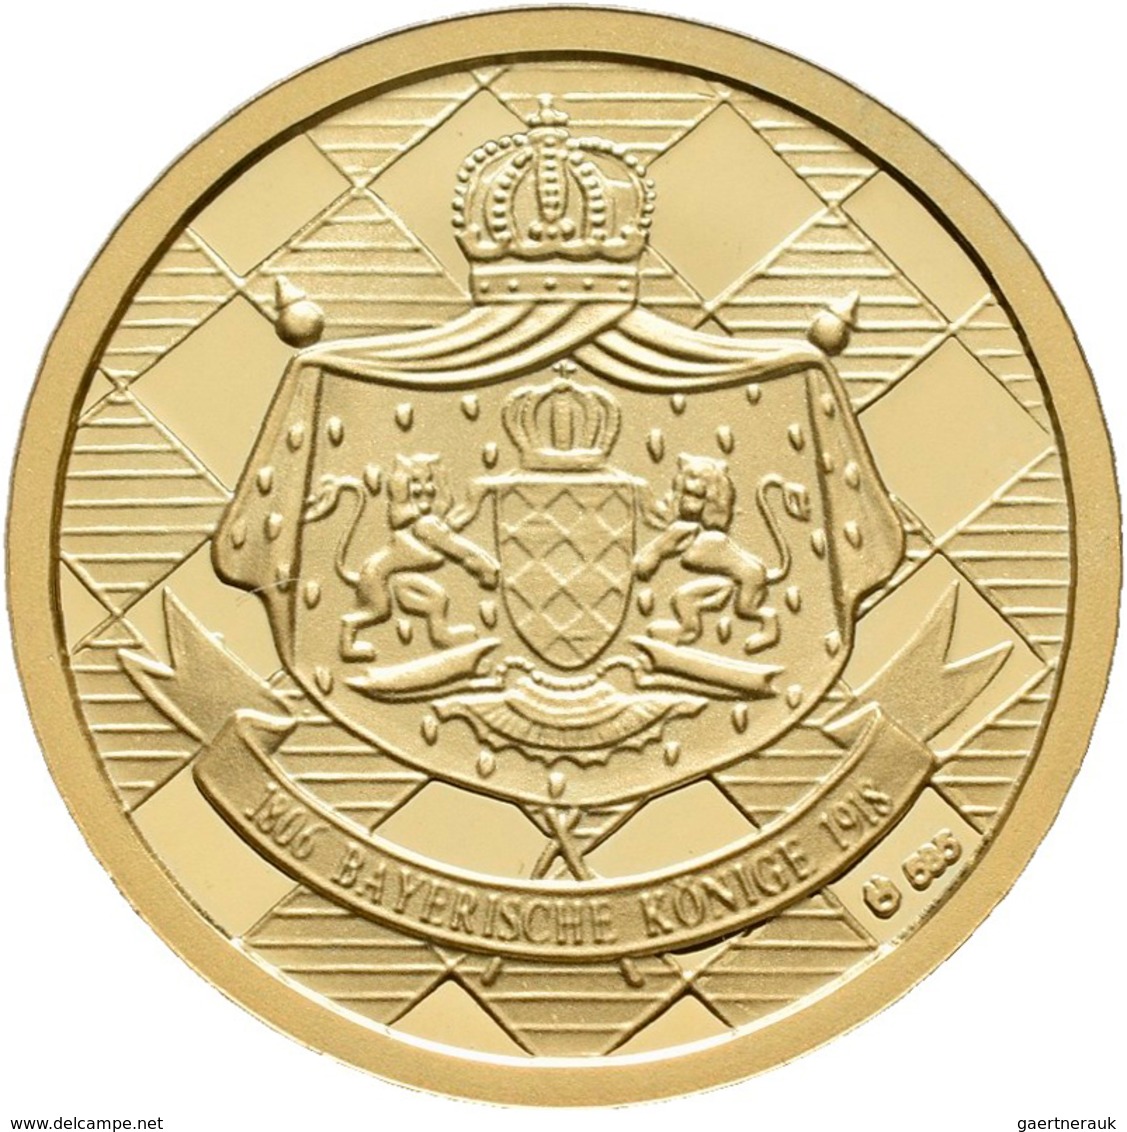 Medaillen Deutschland - Personen: Medaillenset Bayerische Könige: 6 x 1/10 OZ, 585/1000 Gold im Gesa